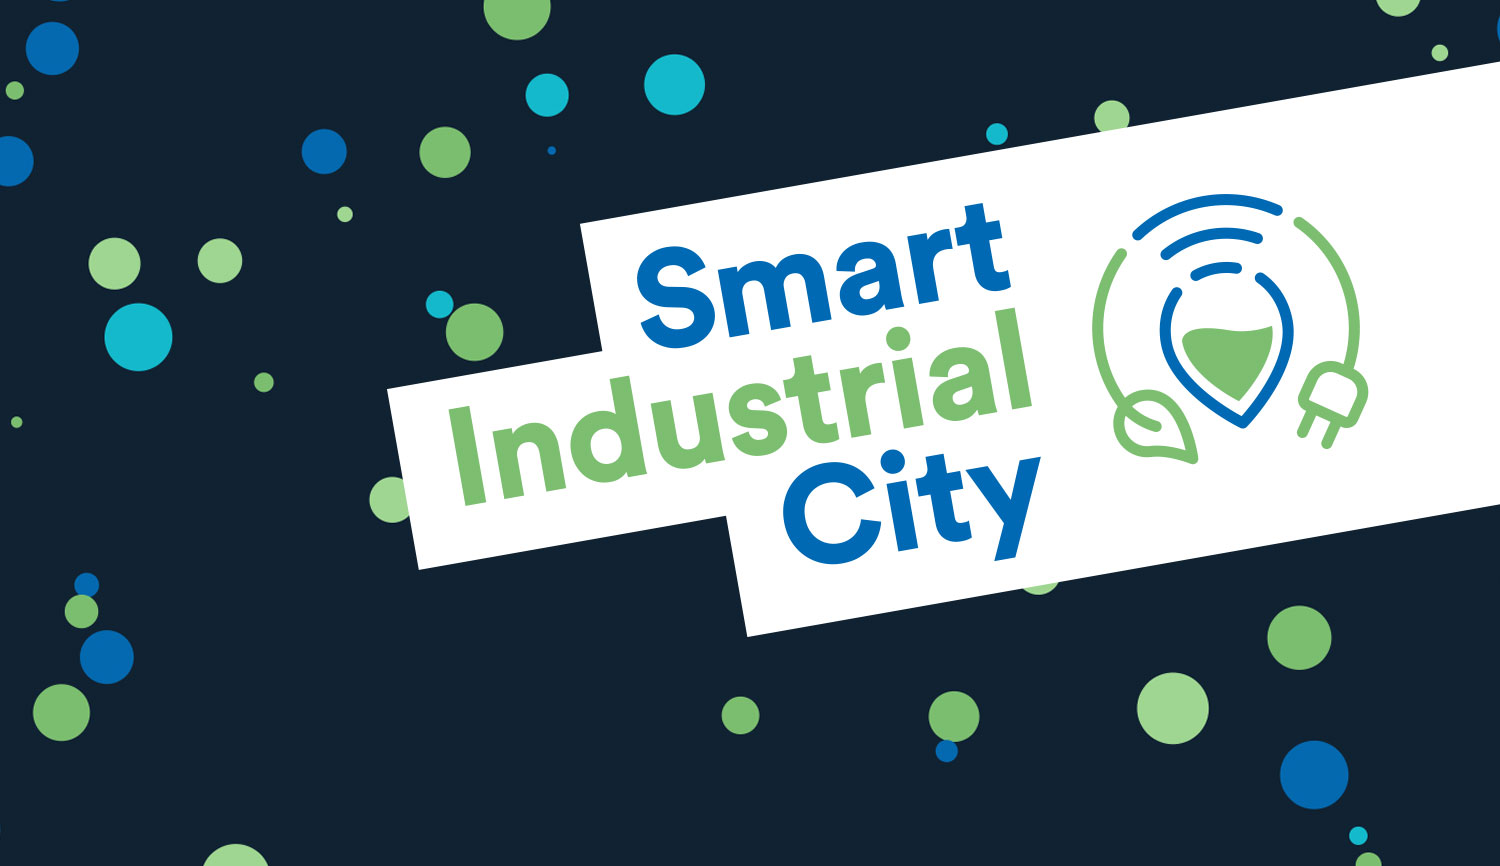 (c) Smart-industrial.city